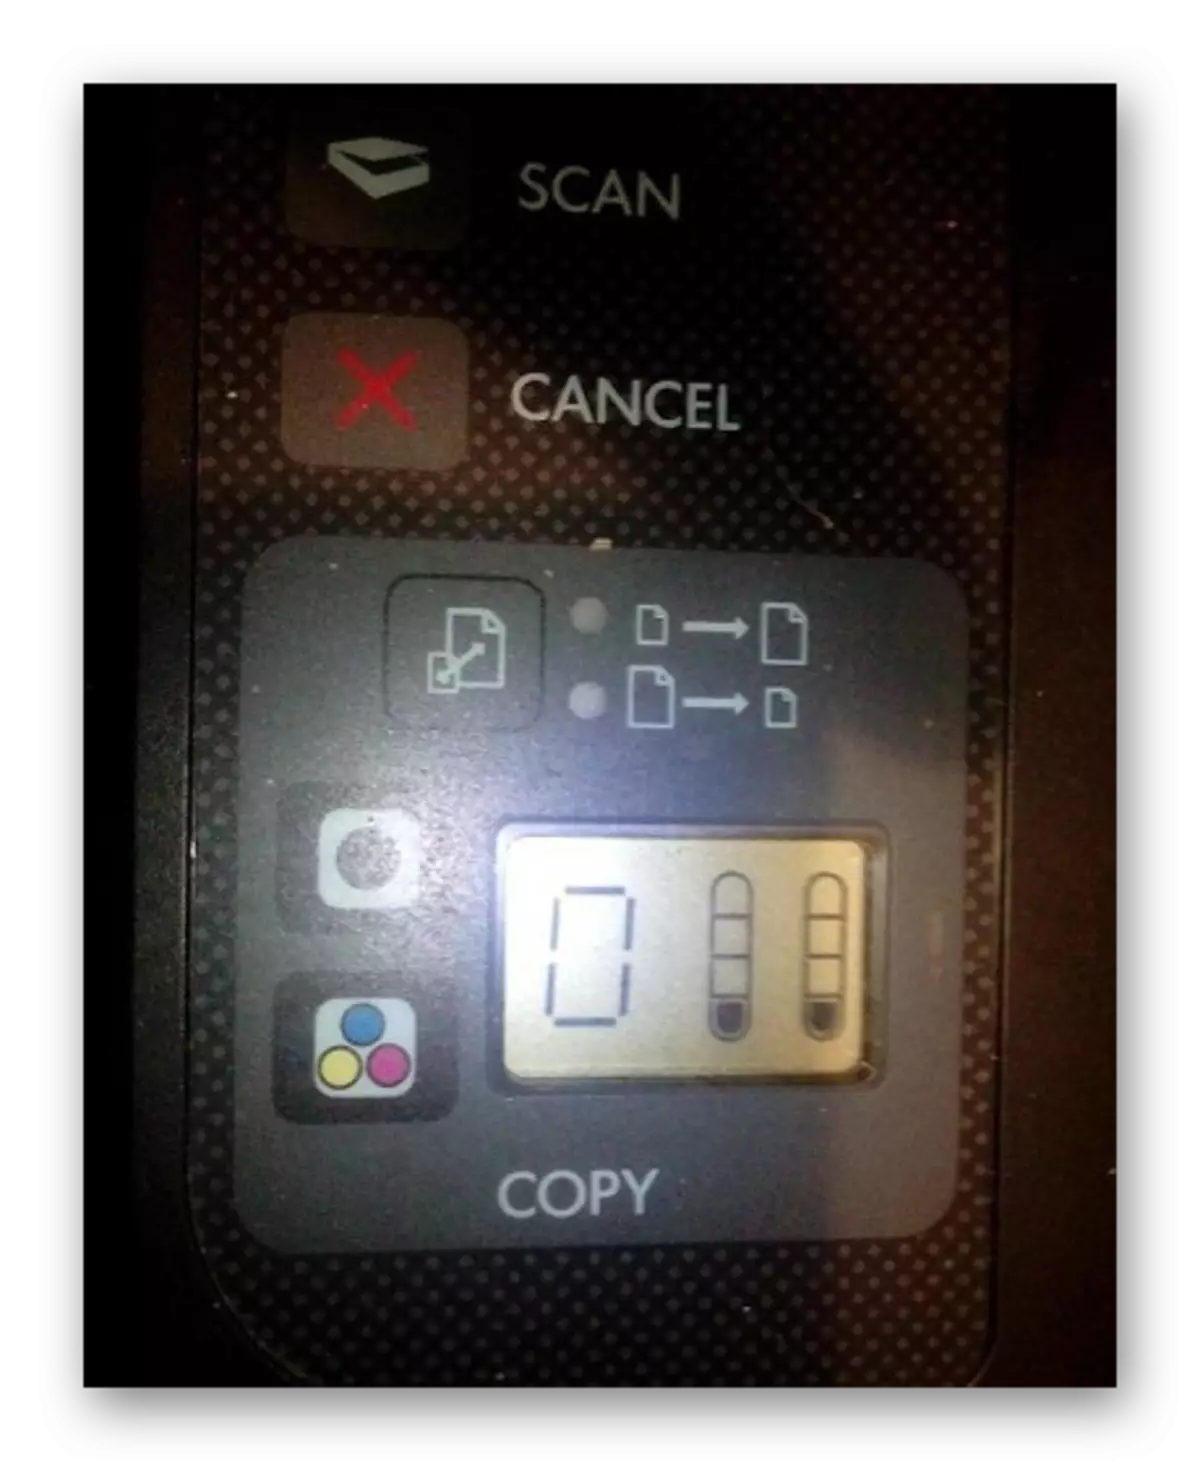 Uitgangsinformatie op de indicator bij het controleren van de verf in de printer